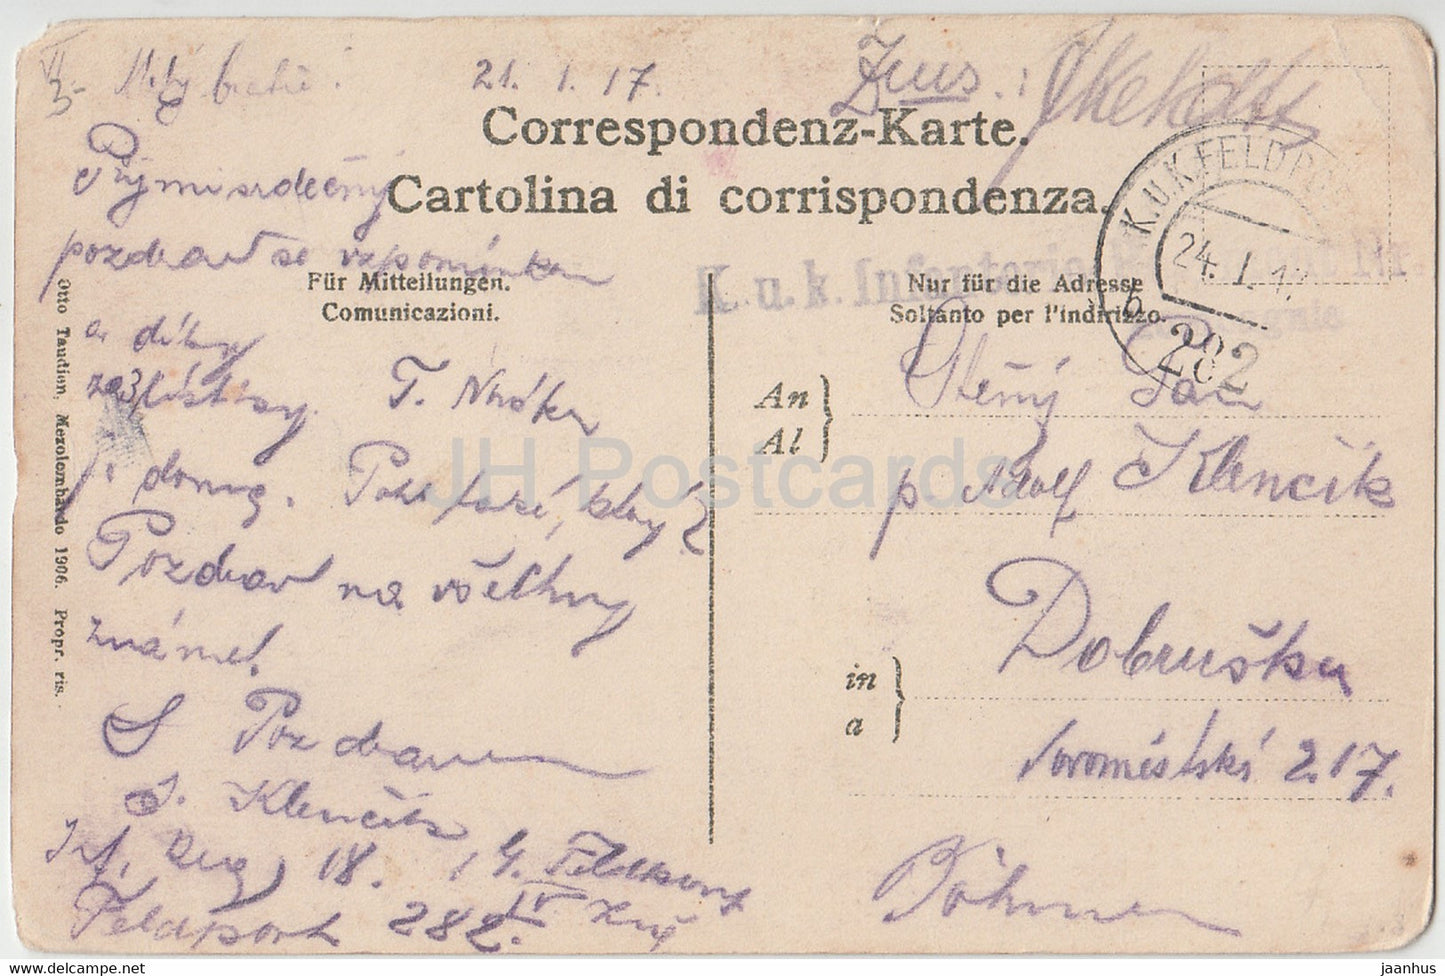 Fondo - Burrone - carte postale ancienne - 1917 - Italie - utilisé